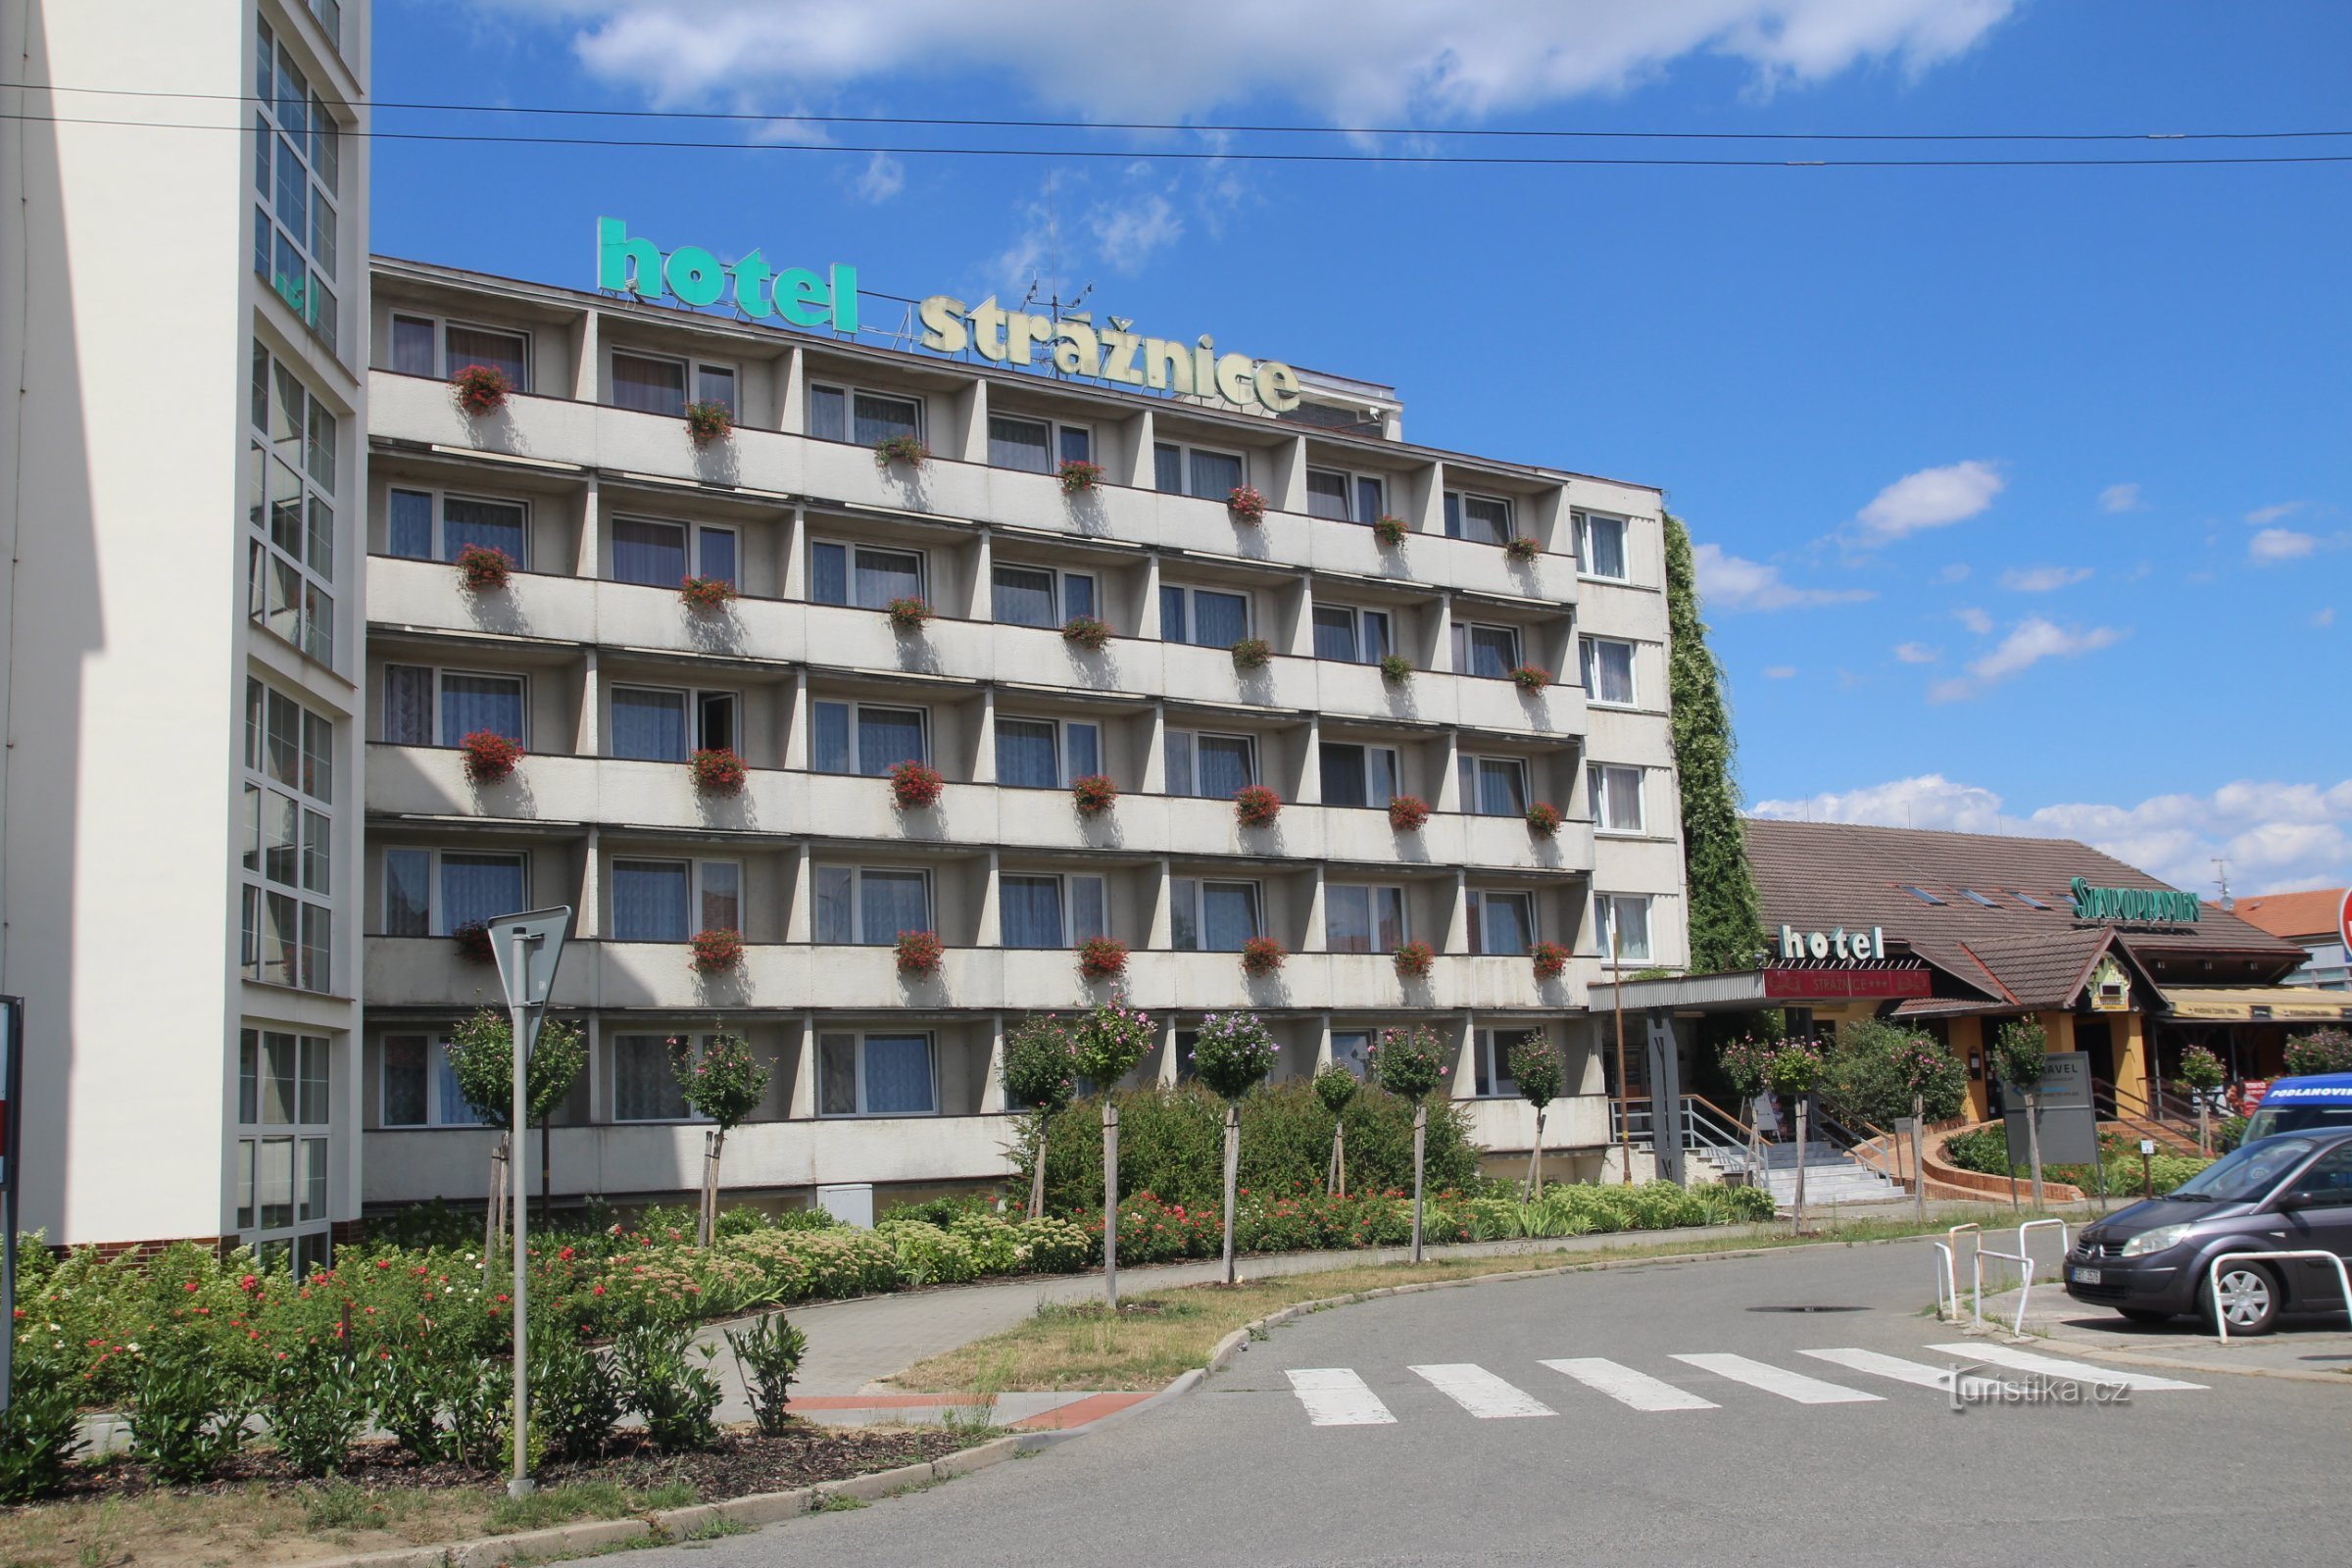 ホテル ストラジュニツェ